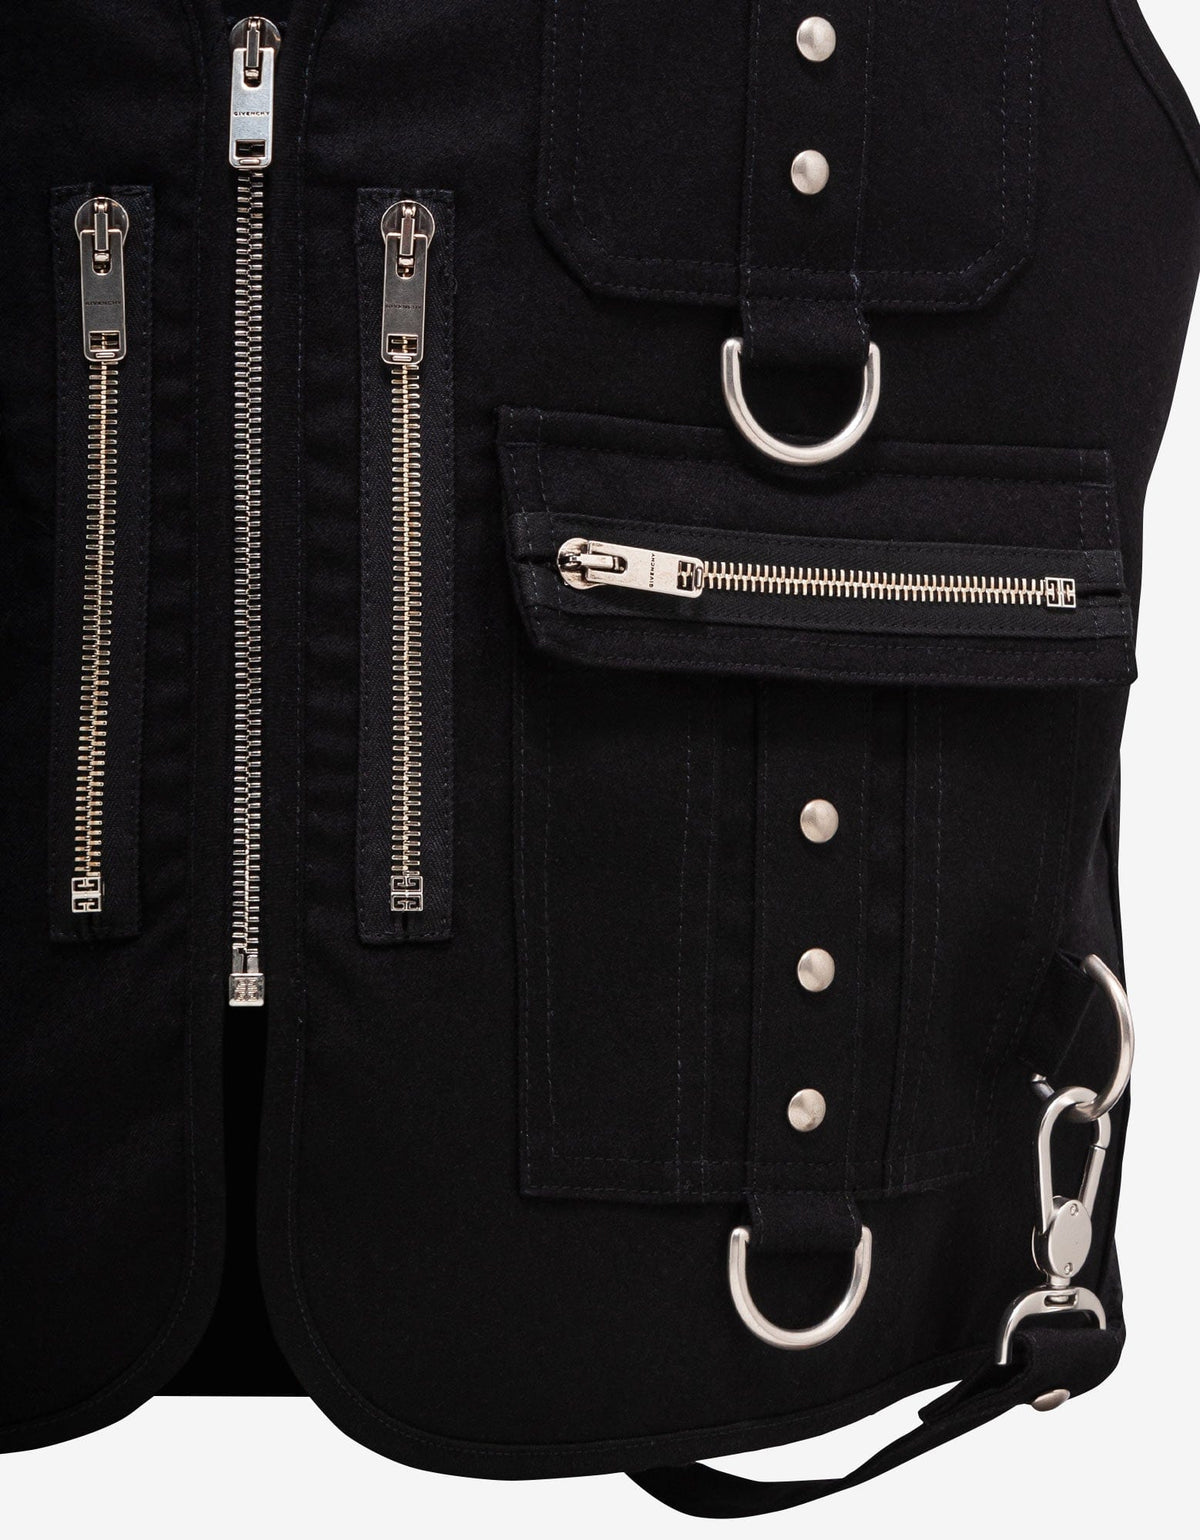 Givenchy Black Multi-Pocket Waistcoat